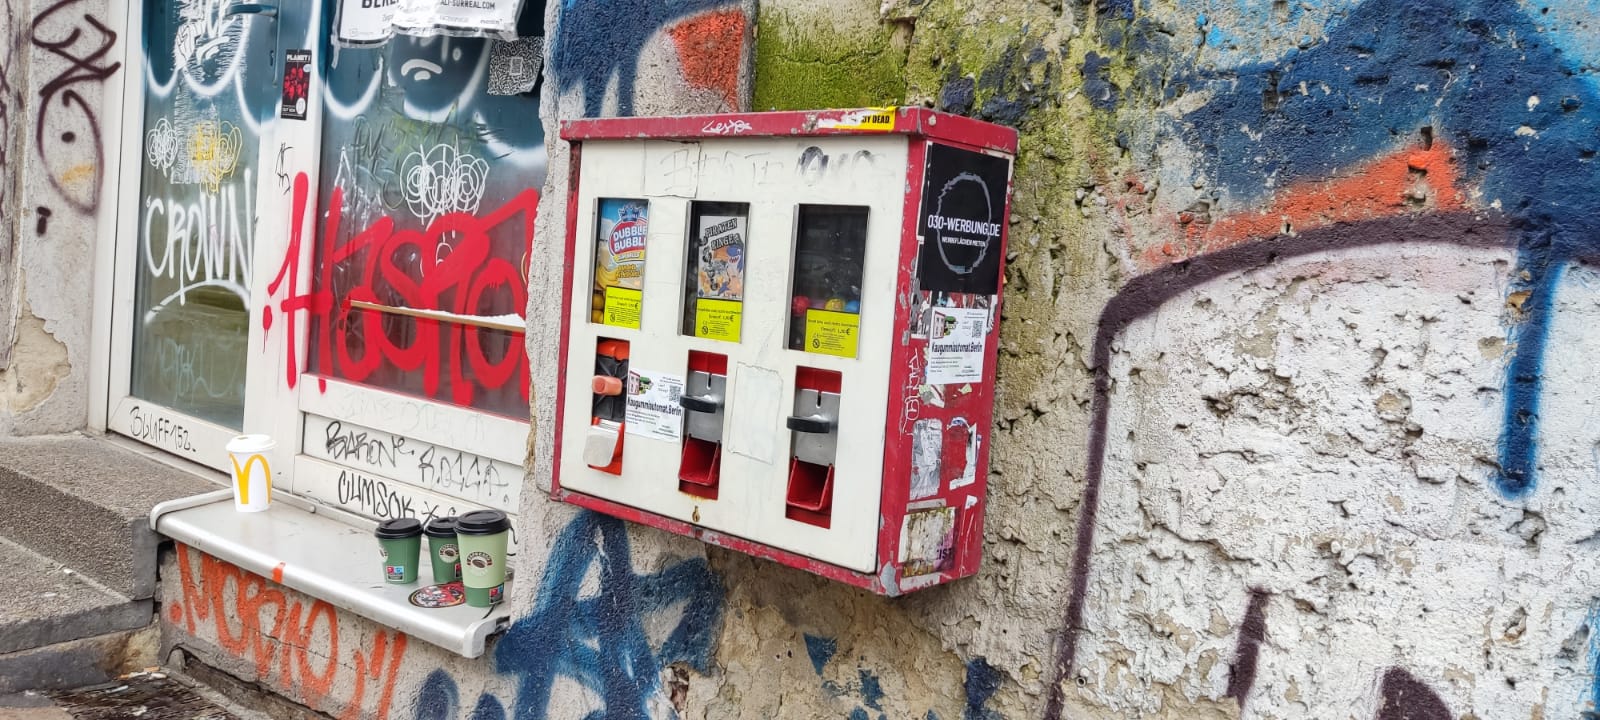 Kaugummiautomat mit Aufkleber Berlin